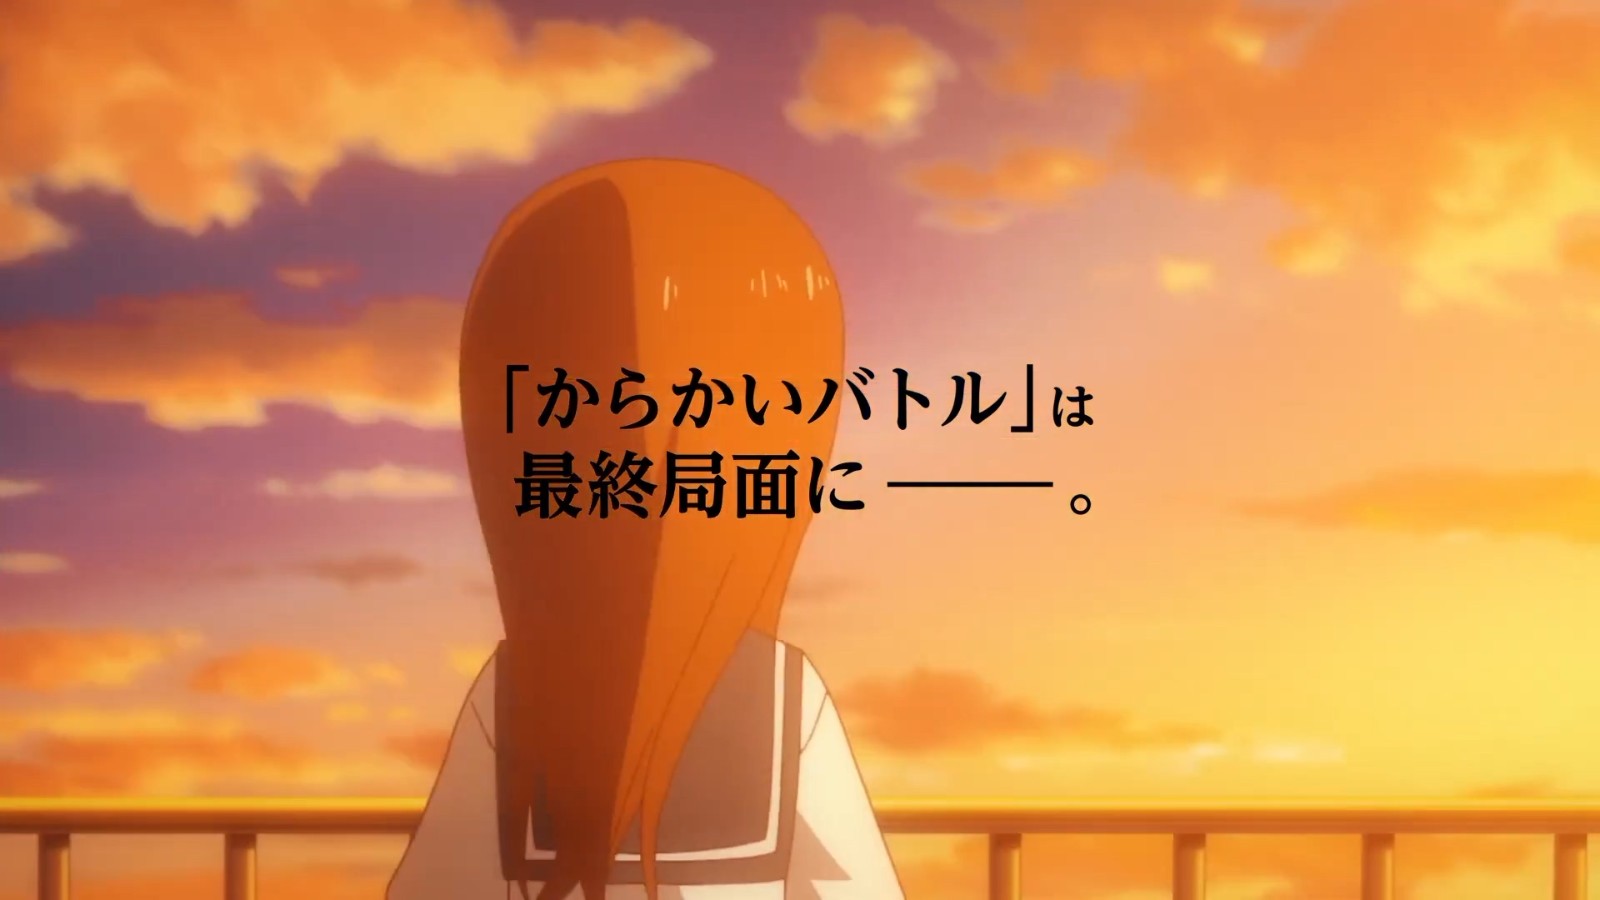 《擅长捉弄的高木同学》TV动画第三季第二弹PV 明年1月开播